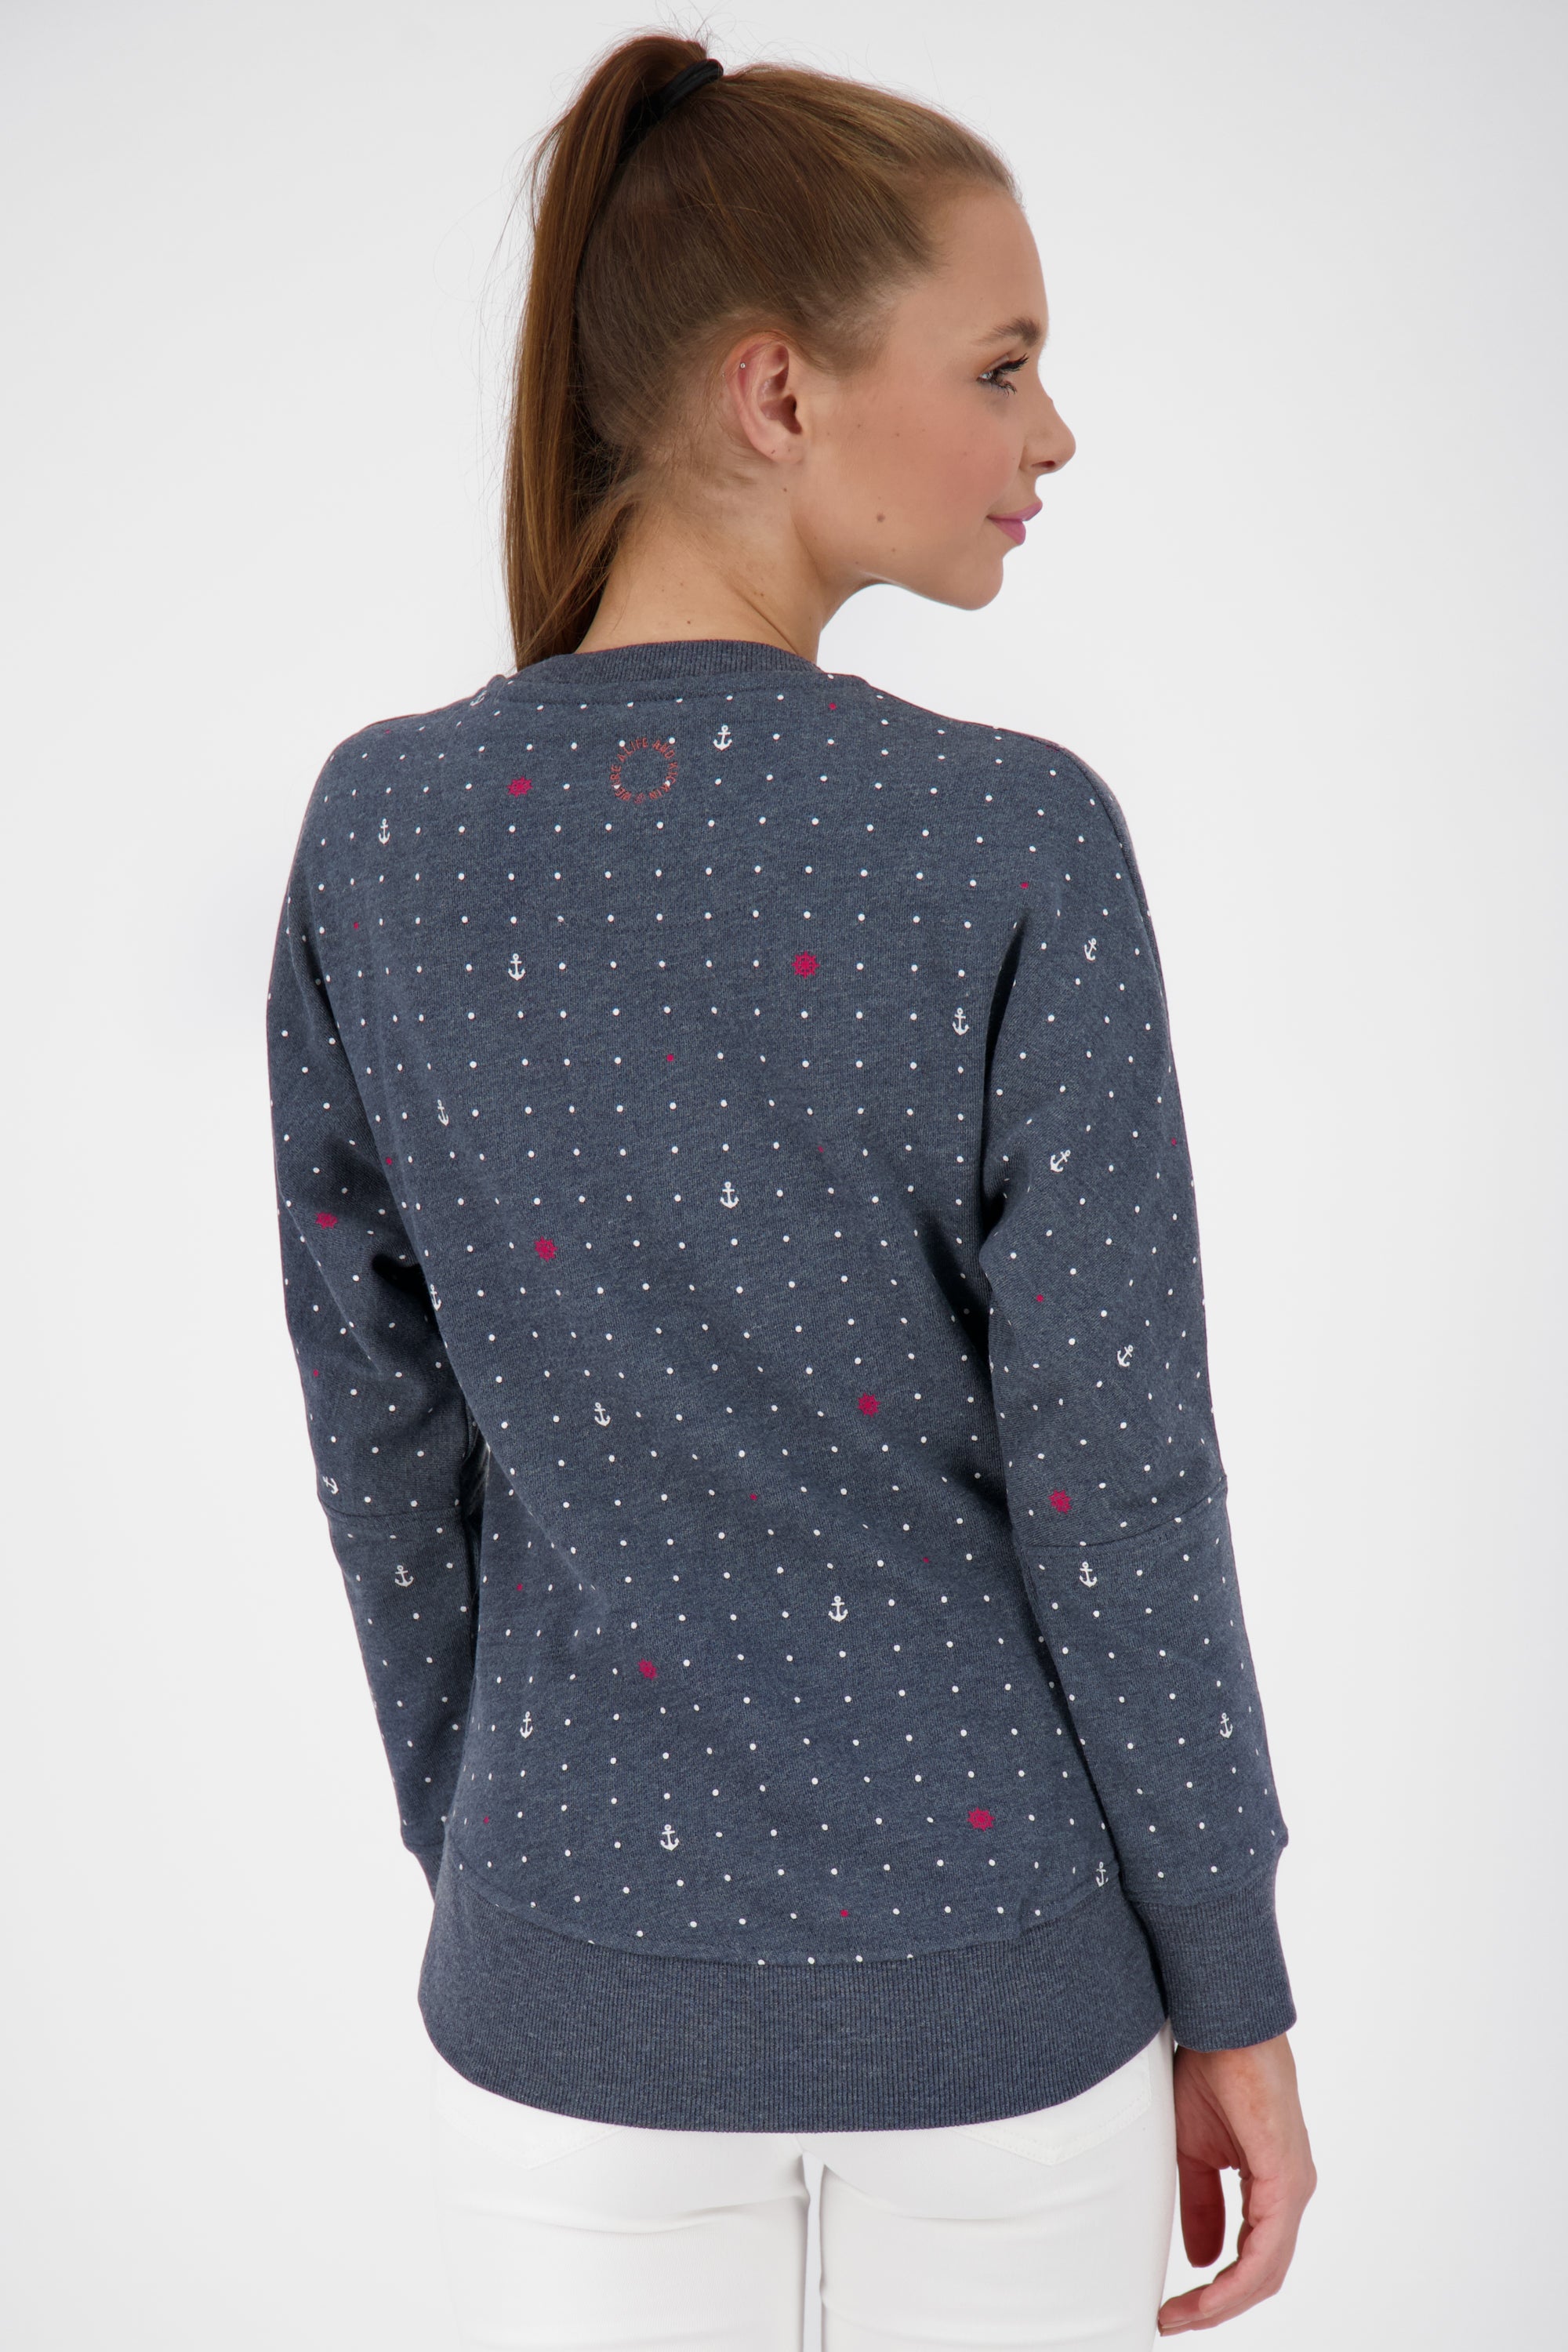 Mustergültiger Damensweater DarlaAK für ein entspanntes Outfit Dunkelblau